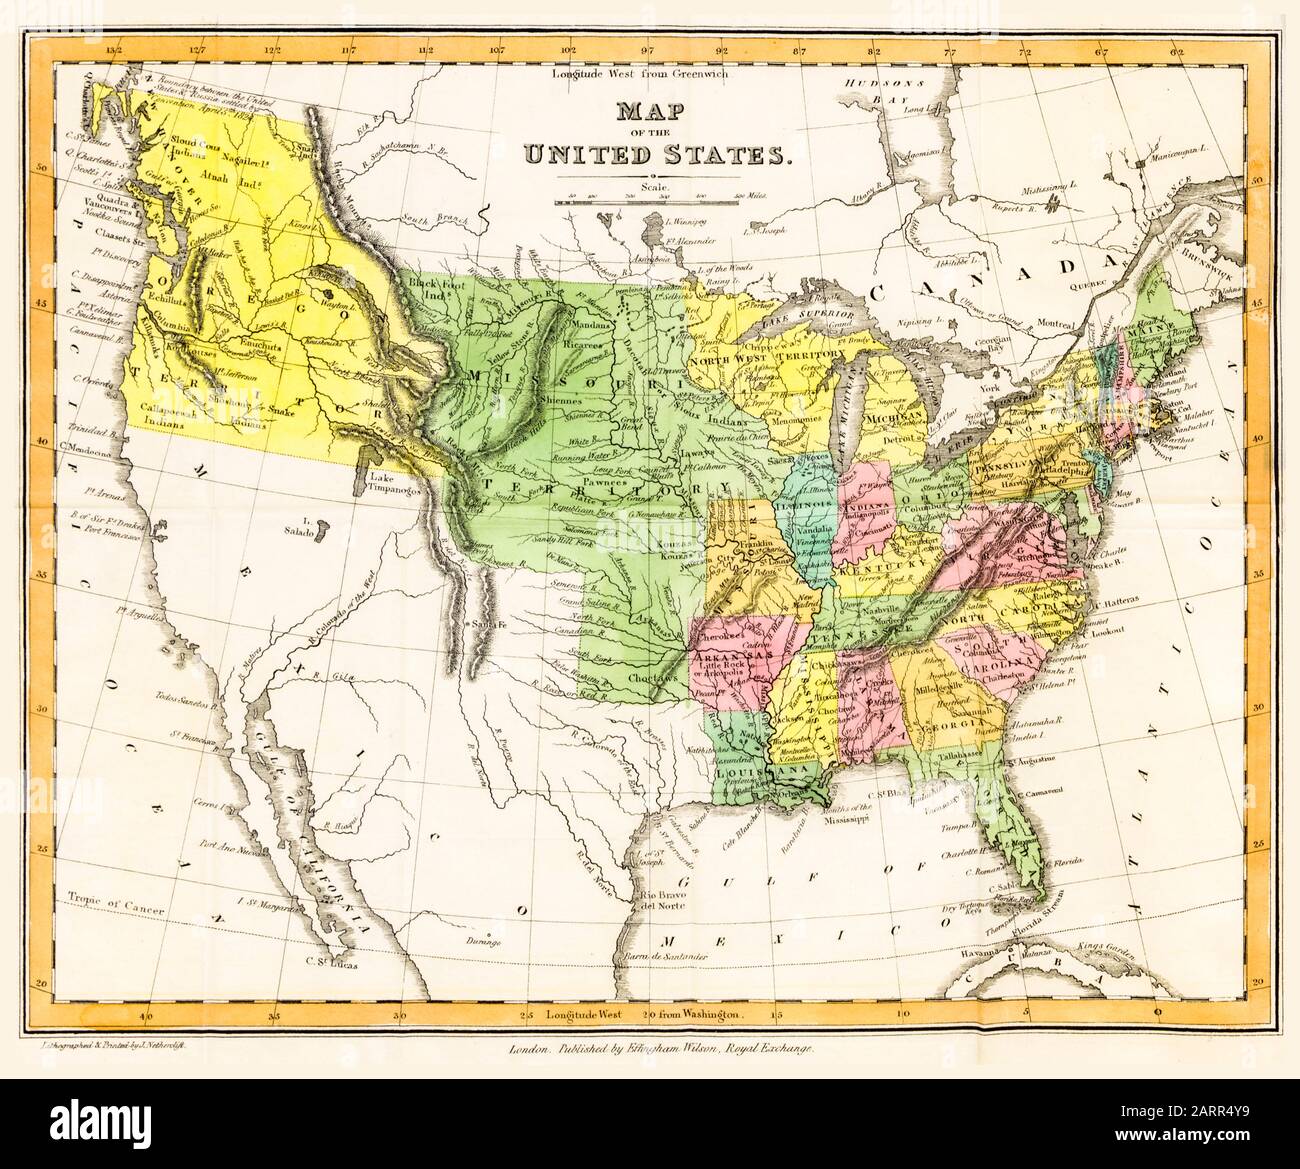 Carte des Etats-Unis d'Amérique dans les années 1830, publiée en 1833 Banque D'Images